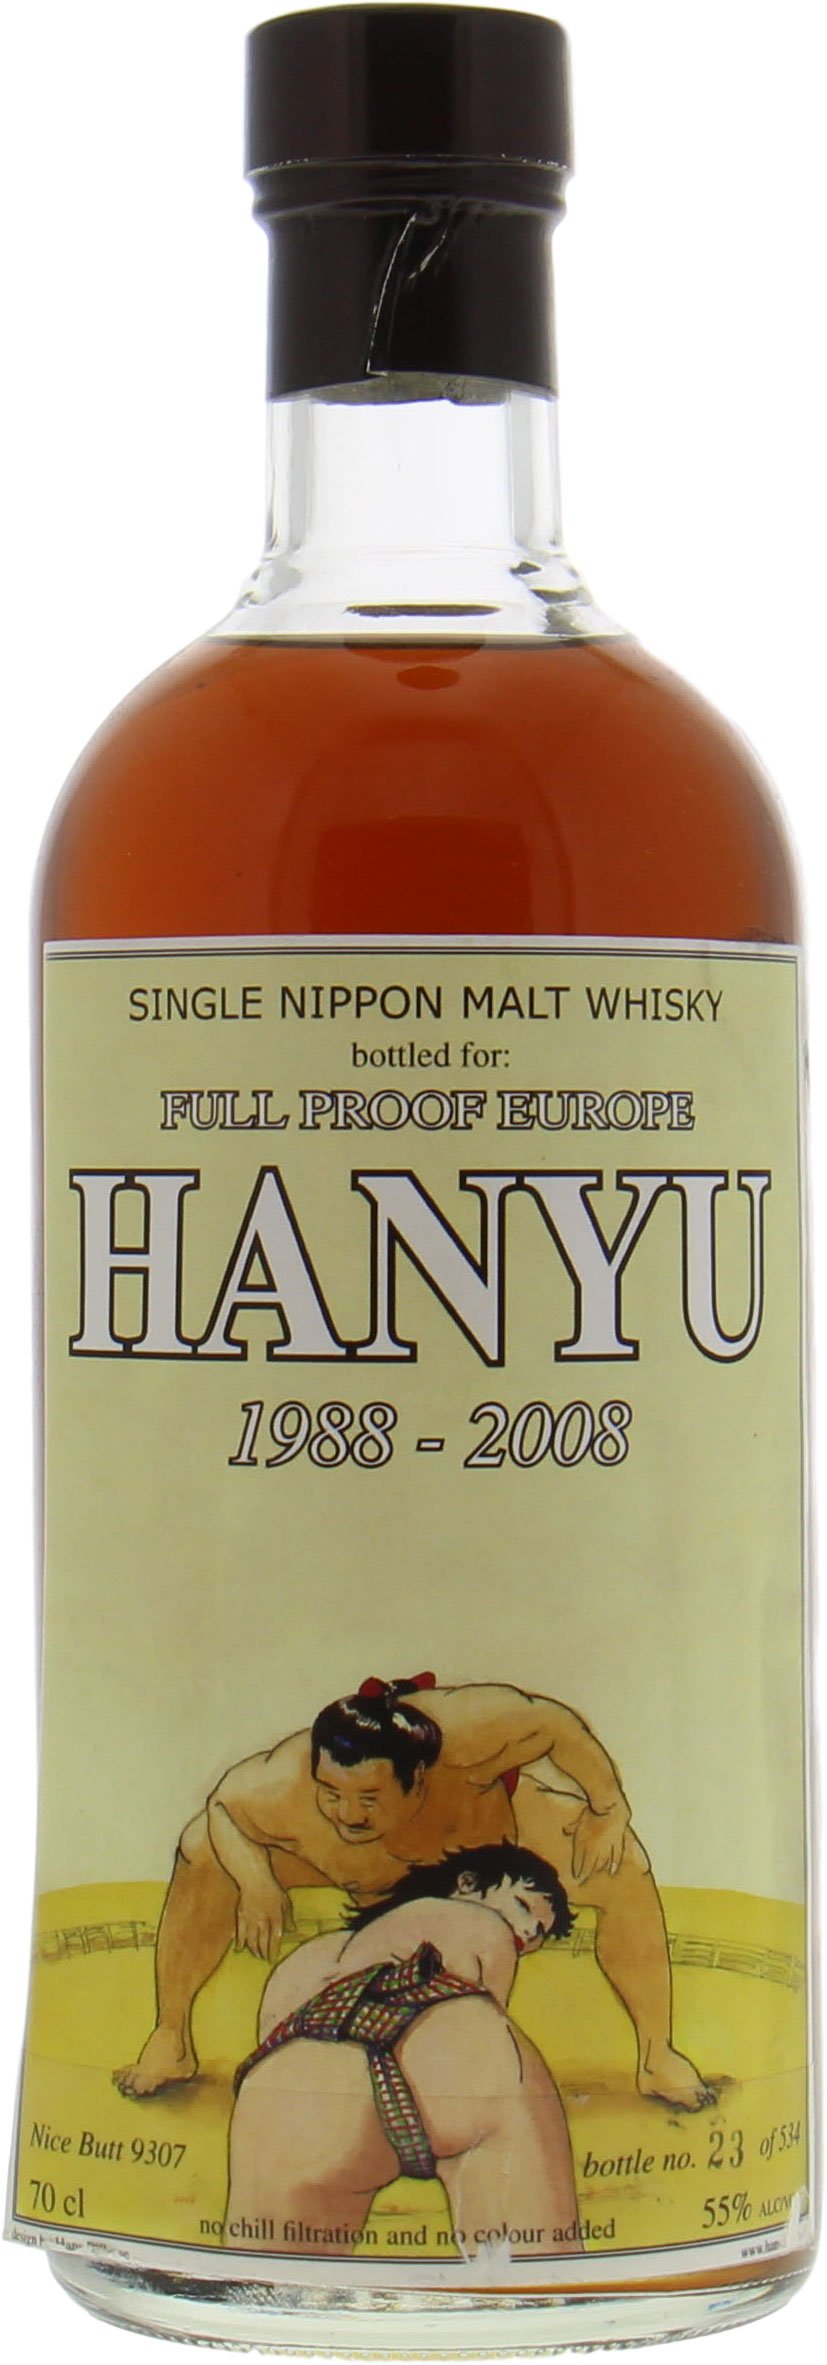 Hanyu - Full Proof Holland Nice Butt Cask 9307 55% 1988 10002